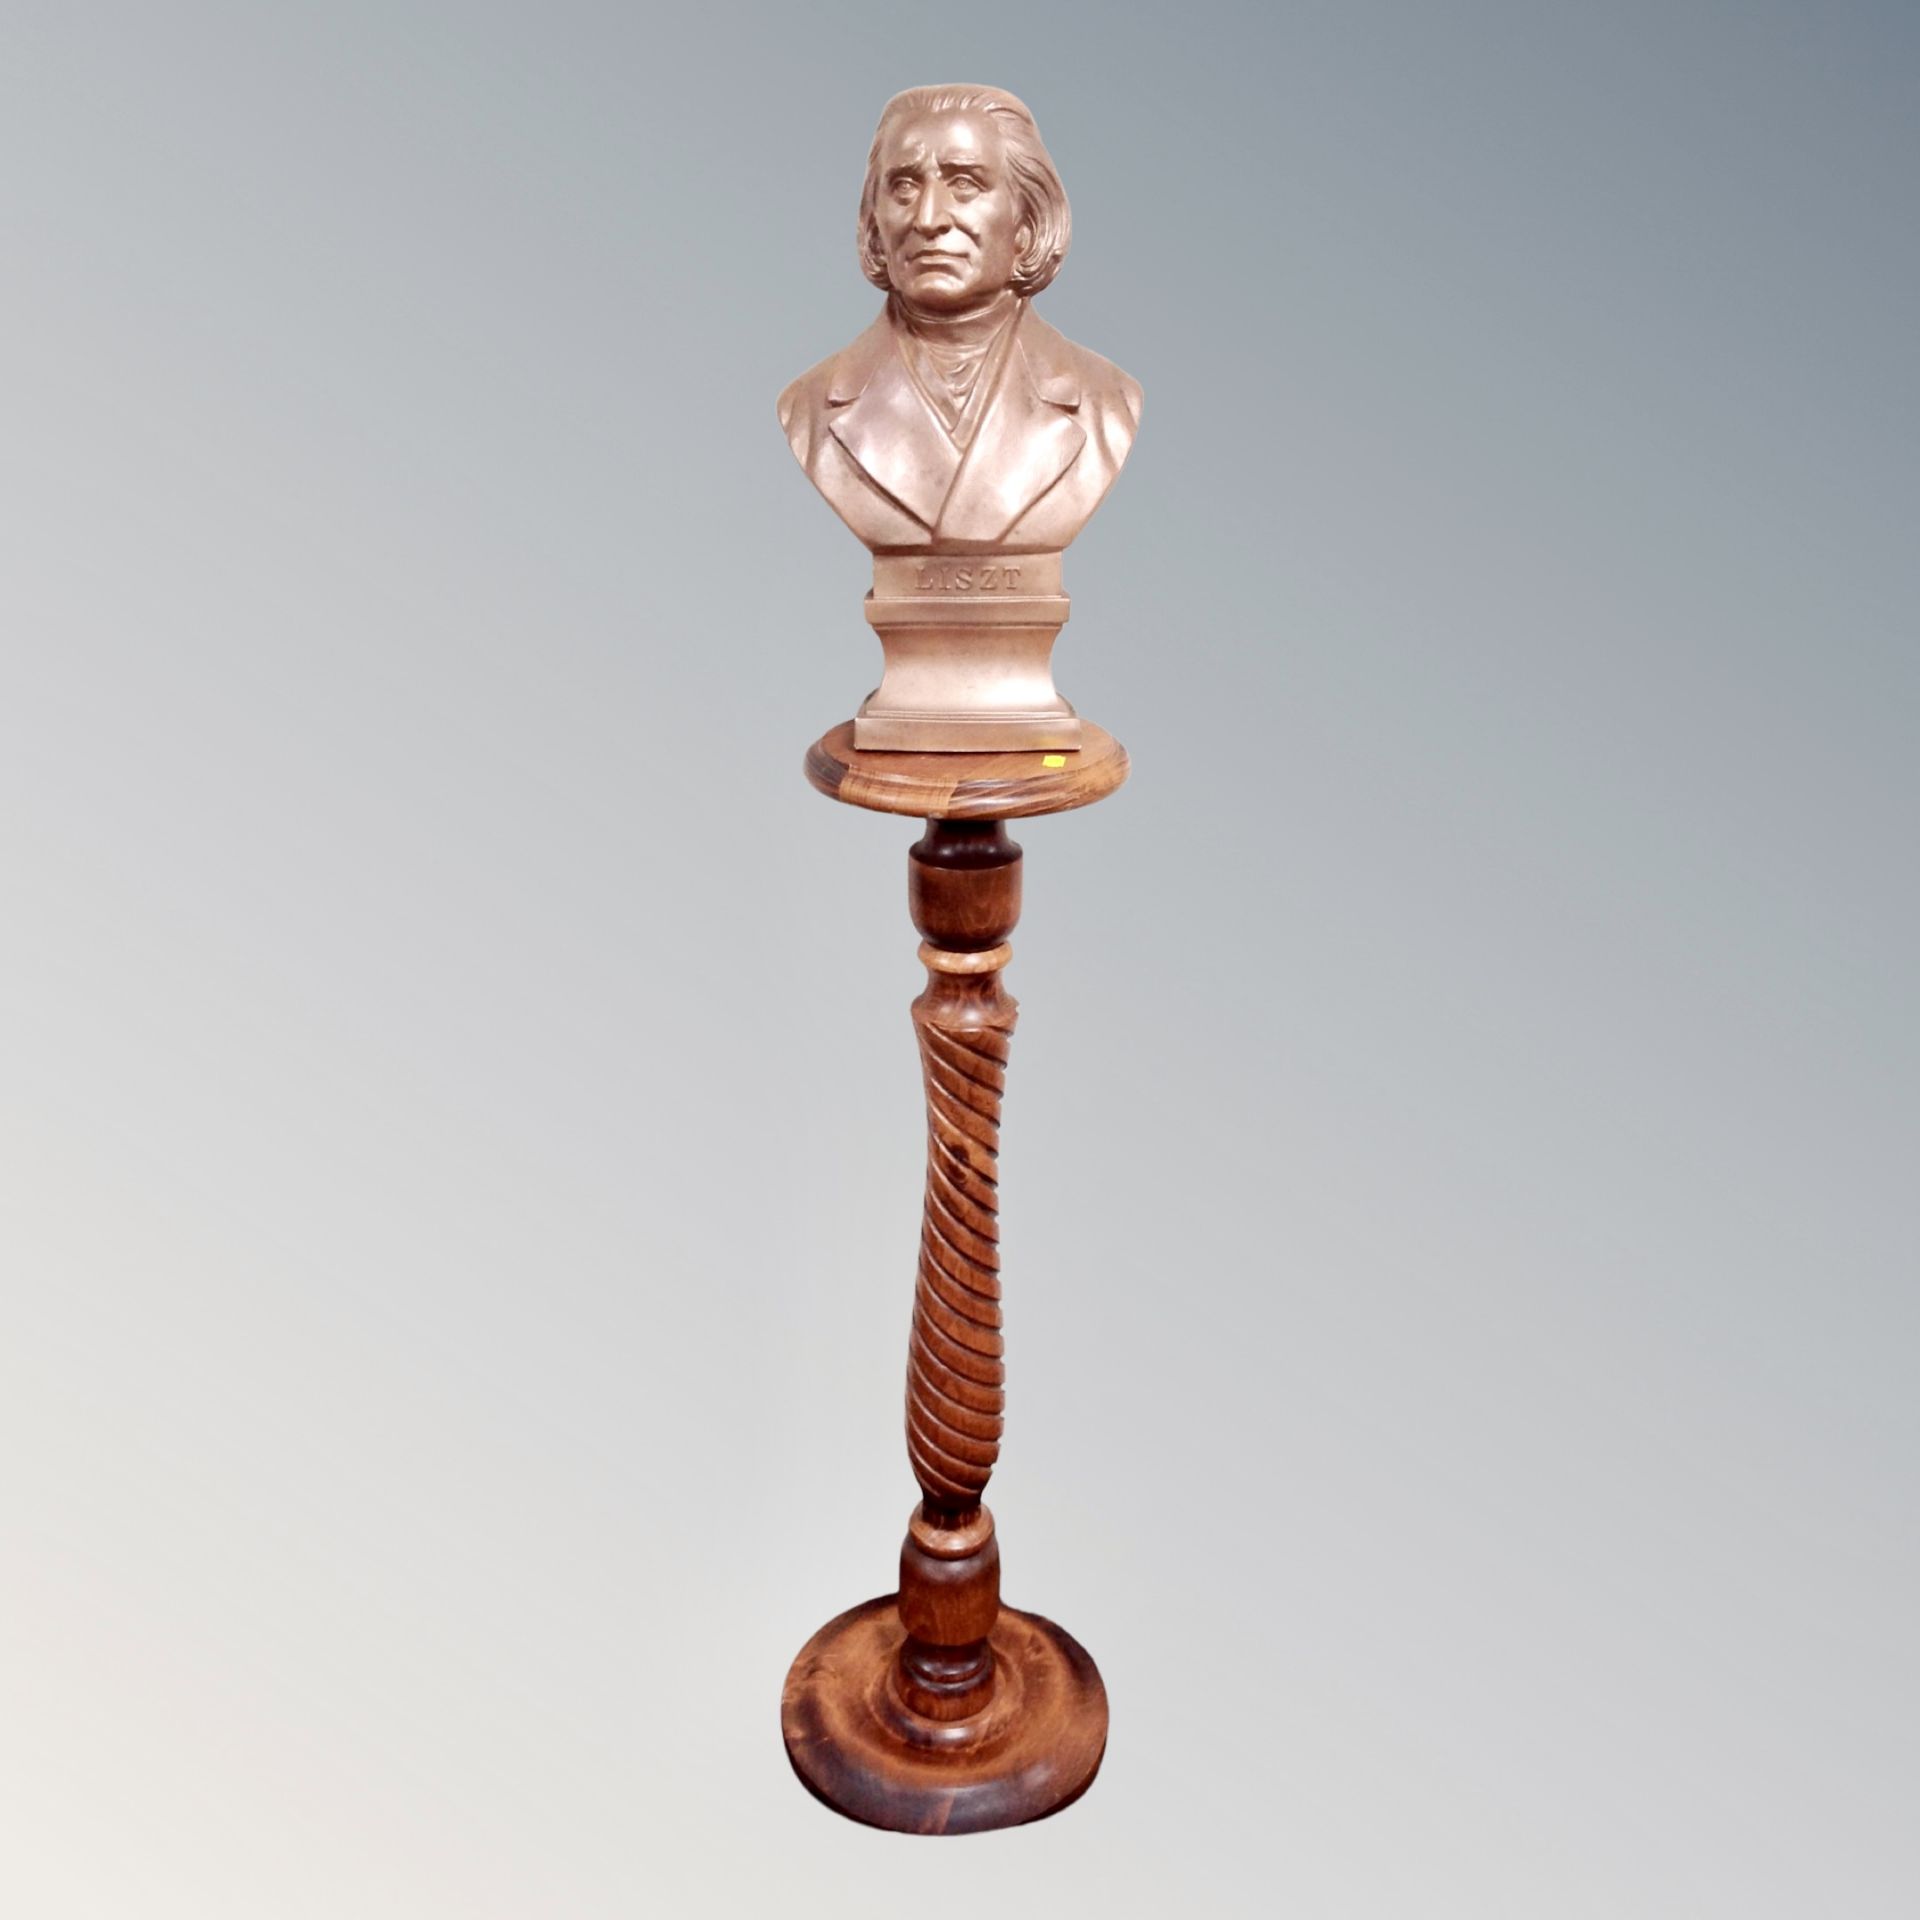 A contemporary bust of Franz Liszt on a beech pedestal